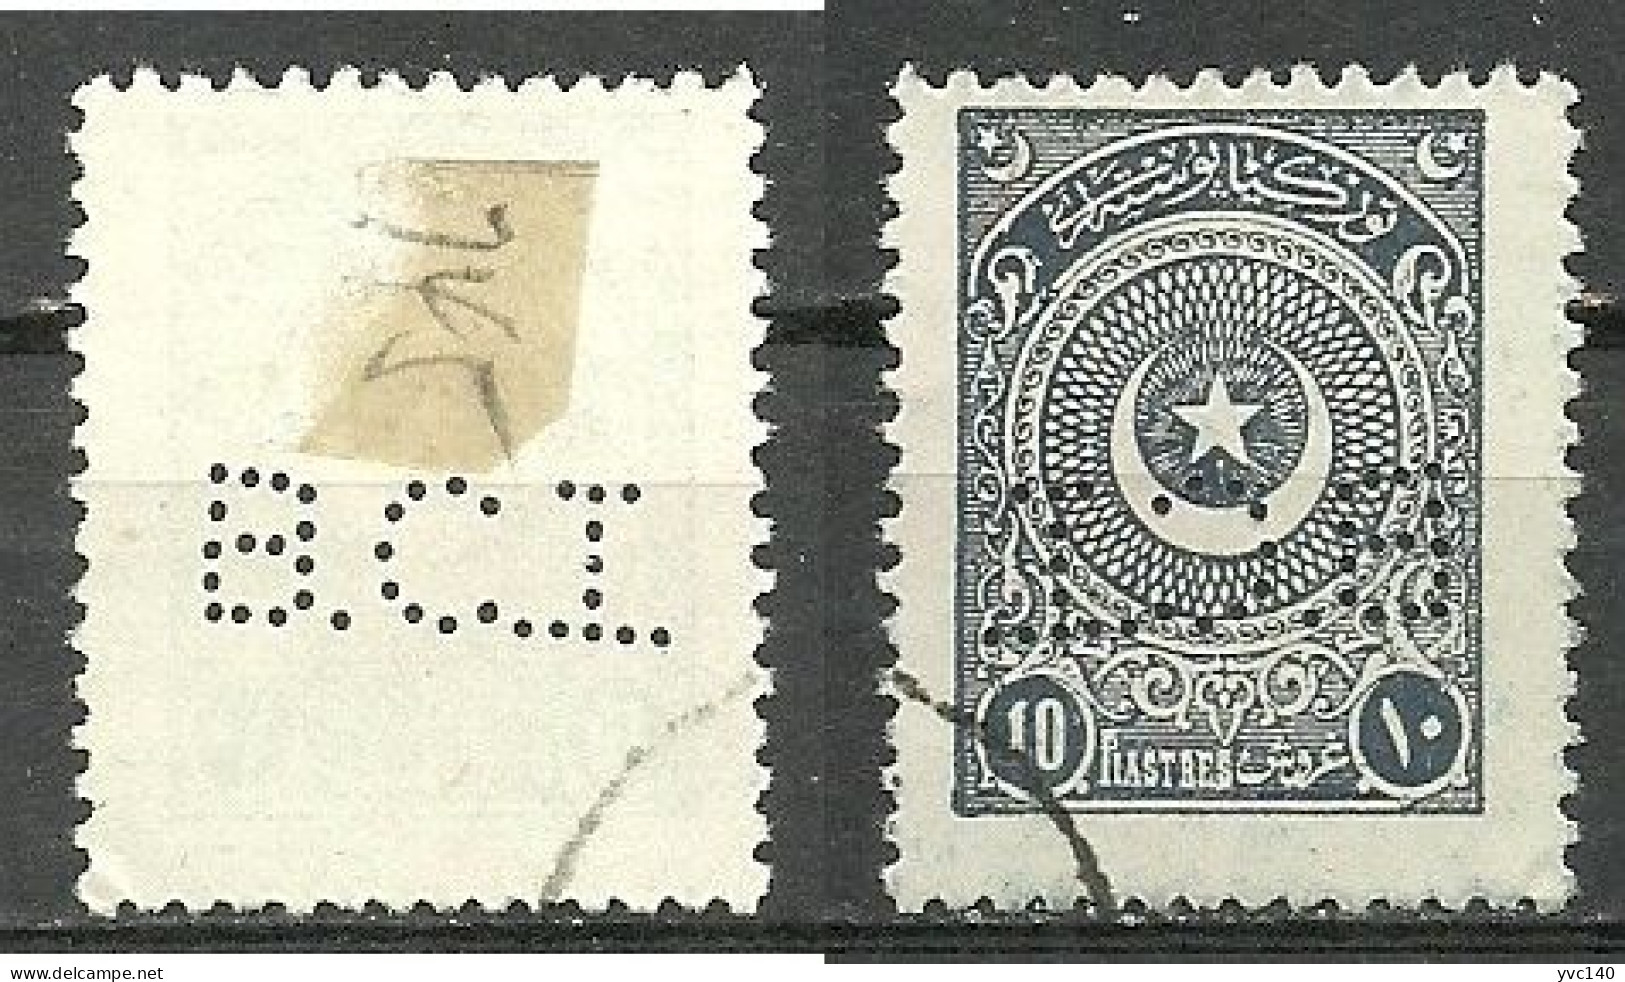 Turkey; 1924 2nd Star&Crescent Issue Stamp 10 K. "Perfin" - Usati